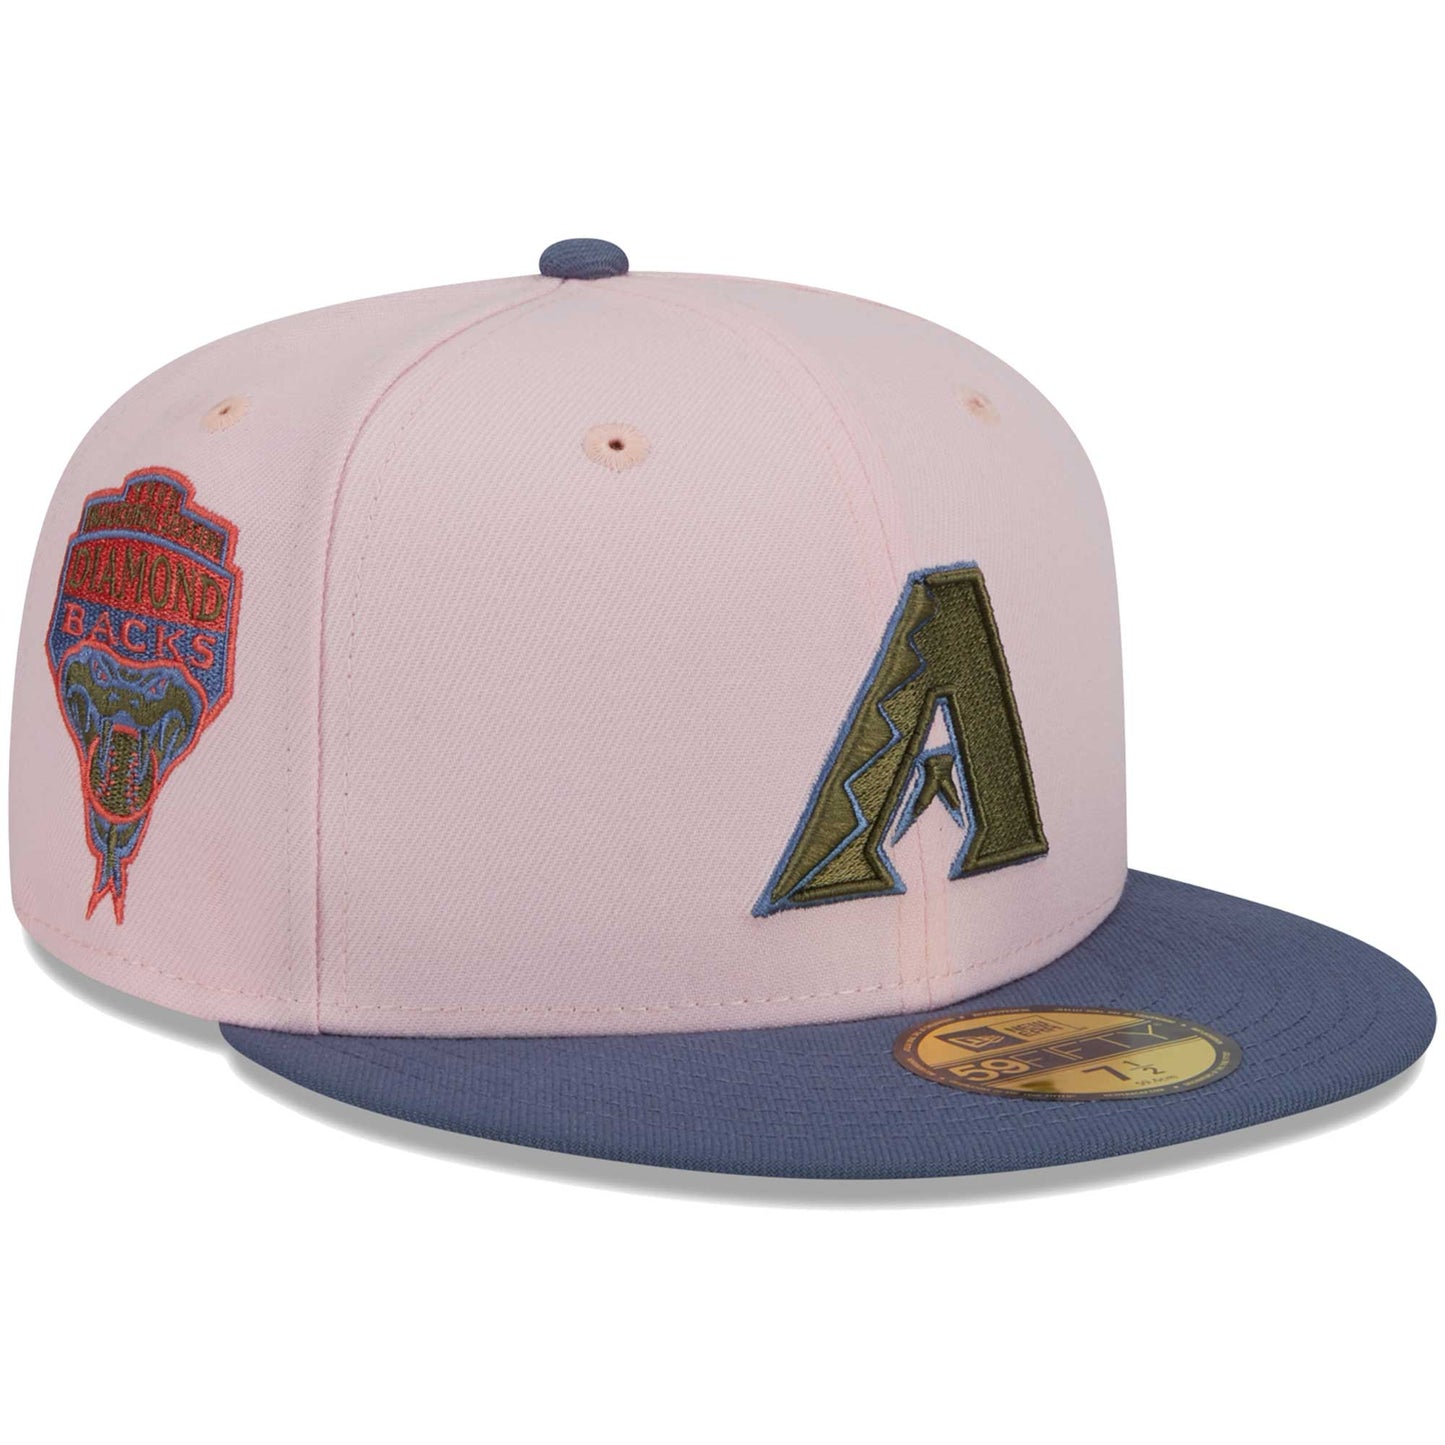 Arizona Diamondbacks New Era Olive Undervisor 59FIFTY Fitted Hat - Pink/Blue